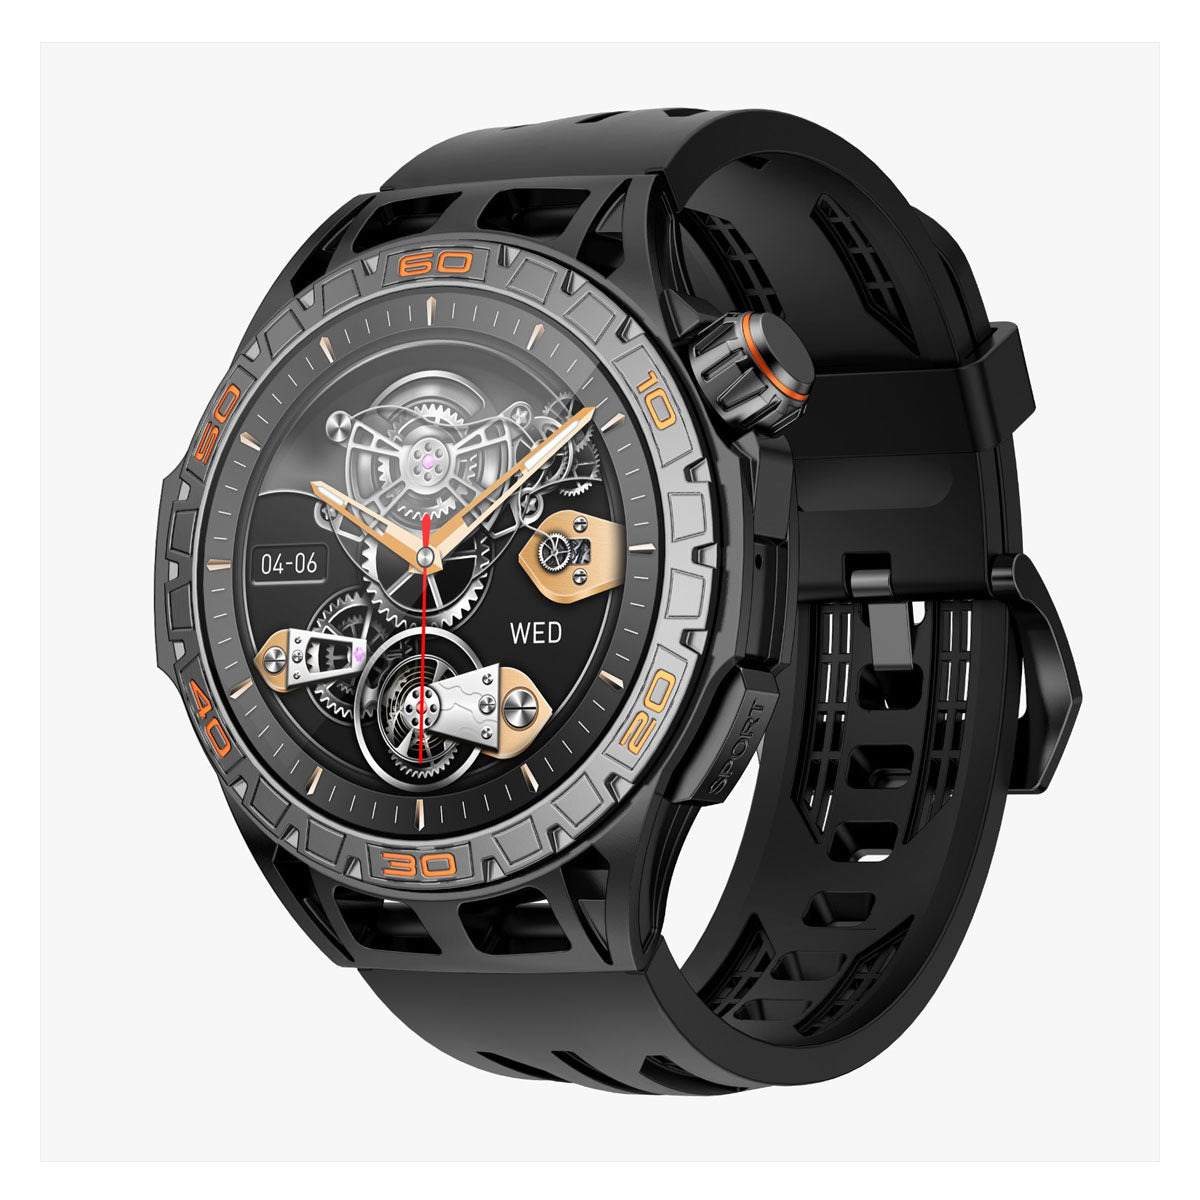 Smartwatch Reloj Inteligente Fralugio La102 Rough Llamadas Amoled